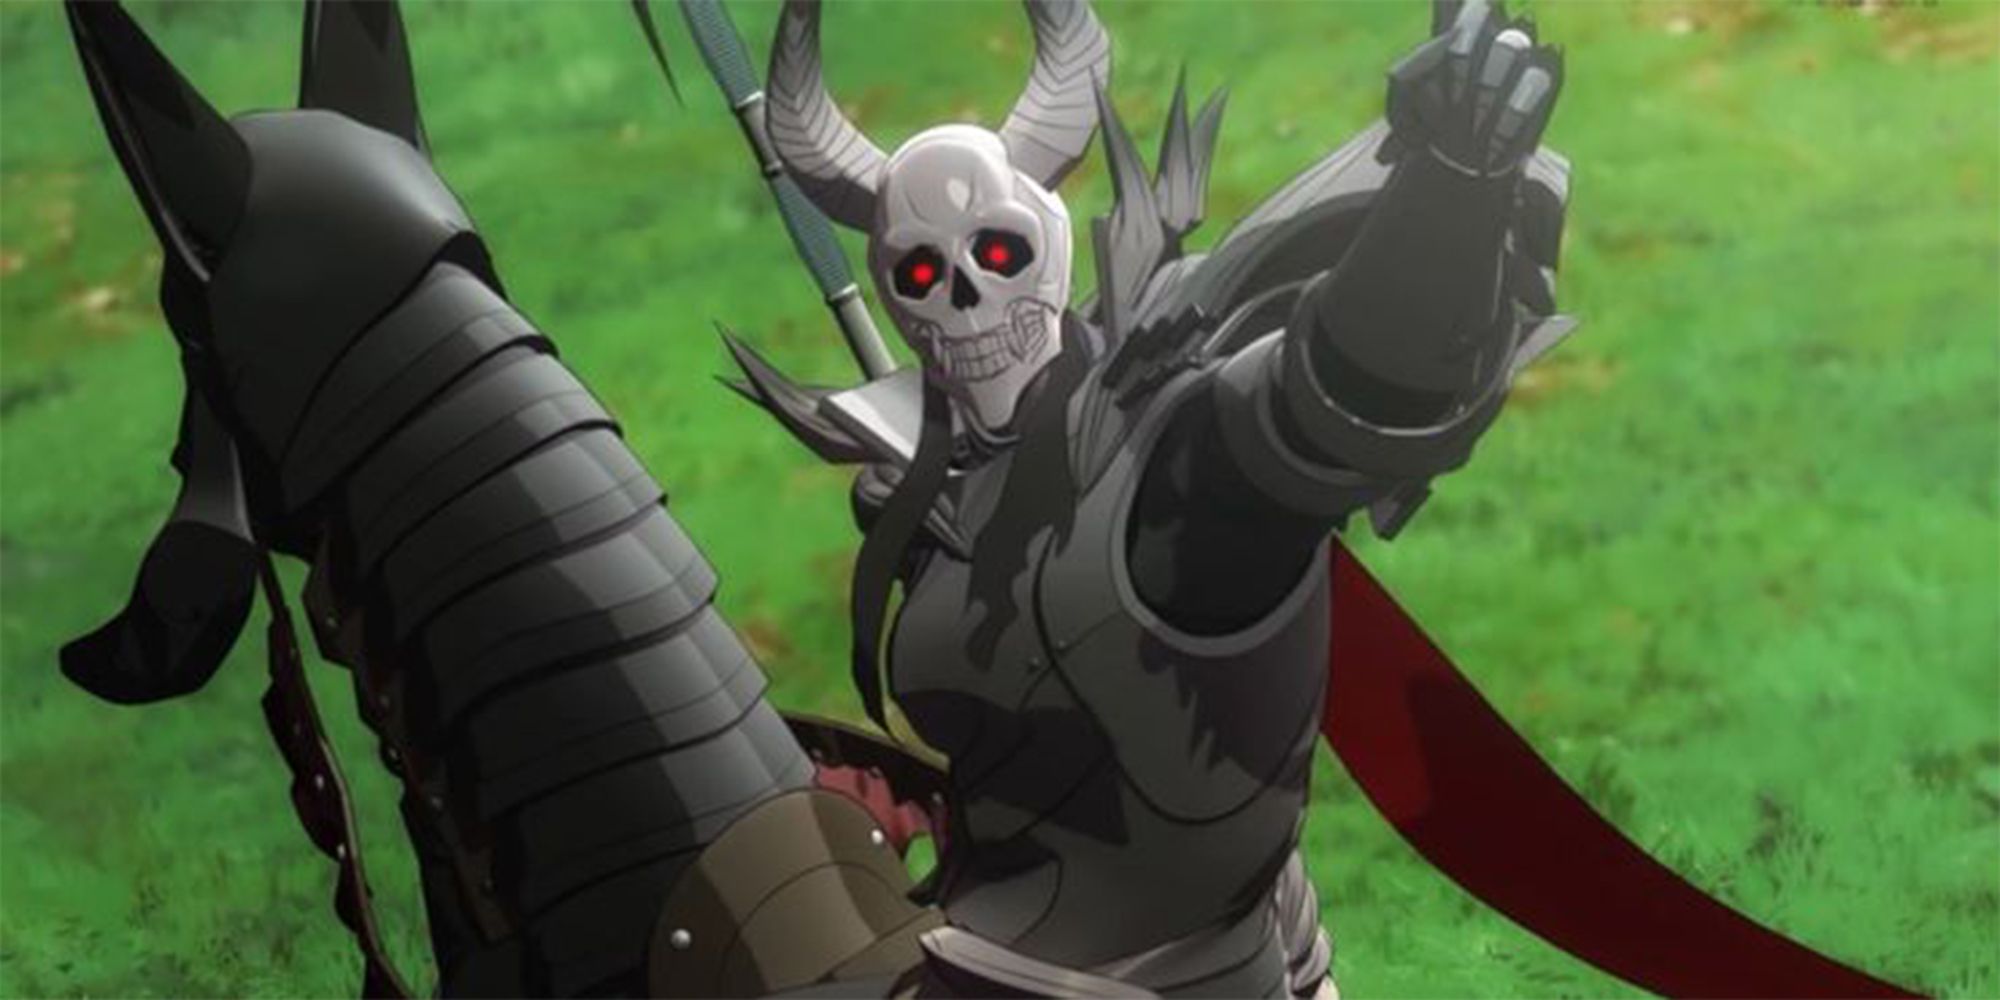 the death knight in a cutscene wearing armor